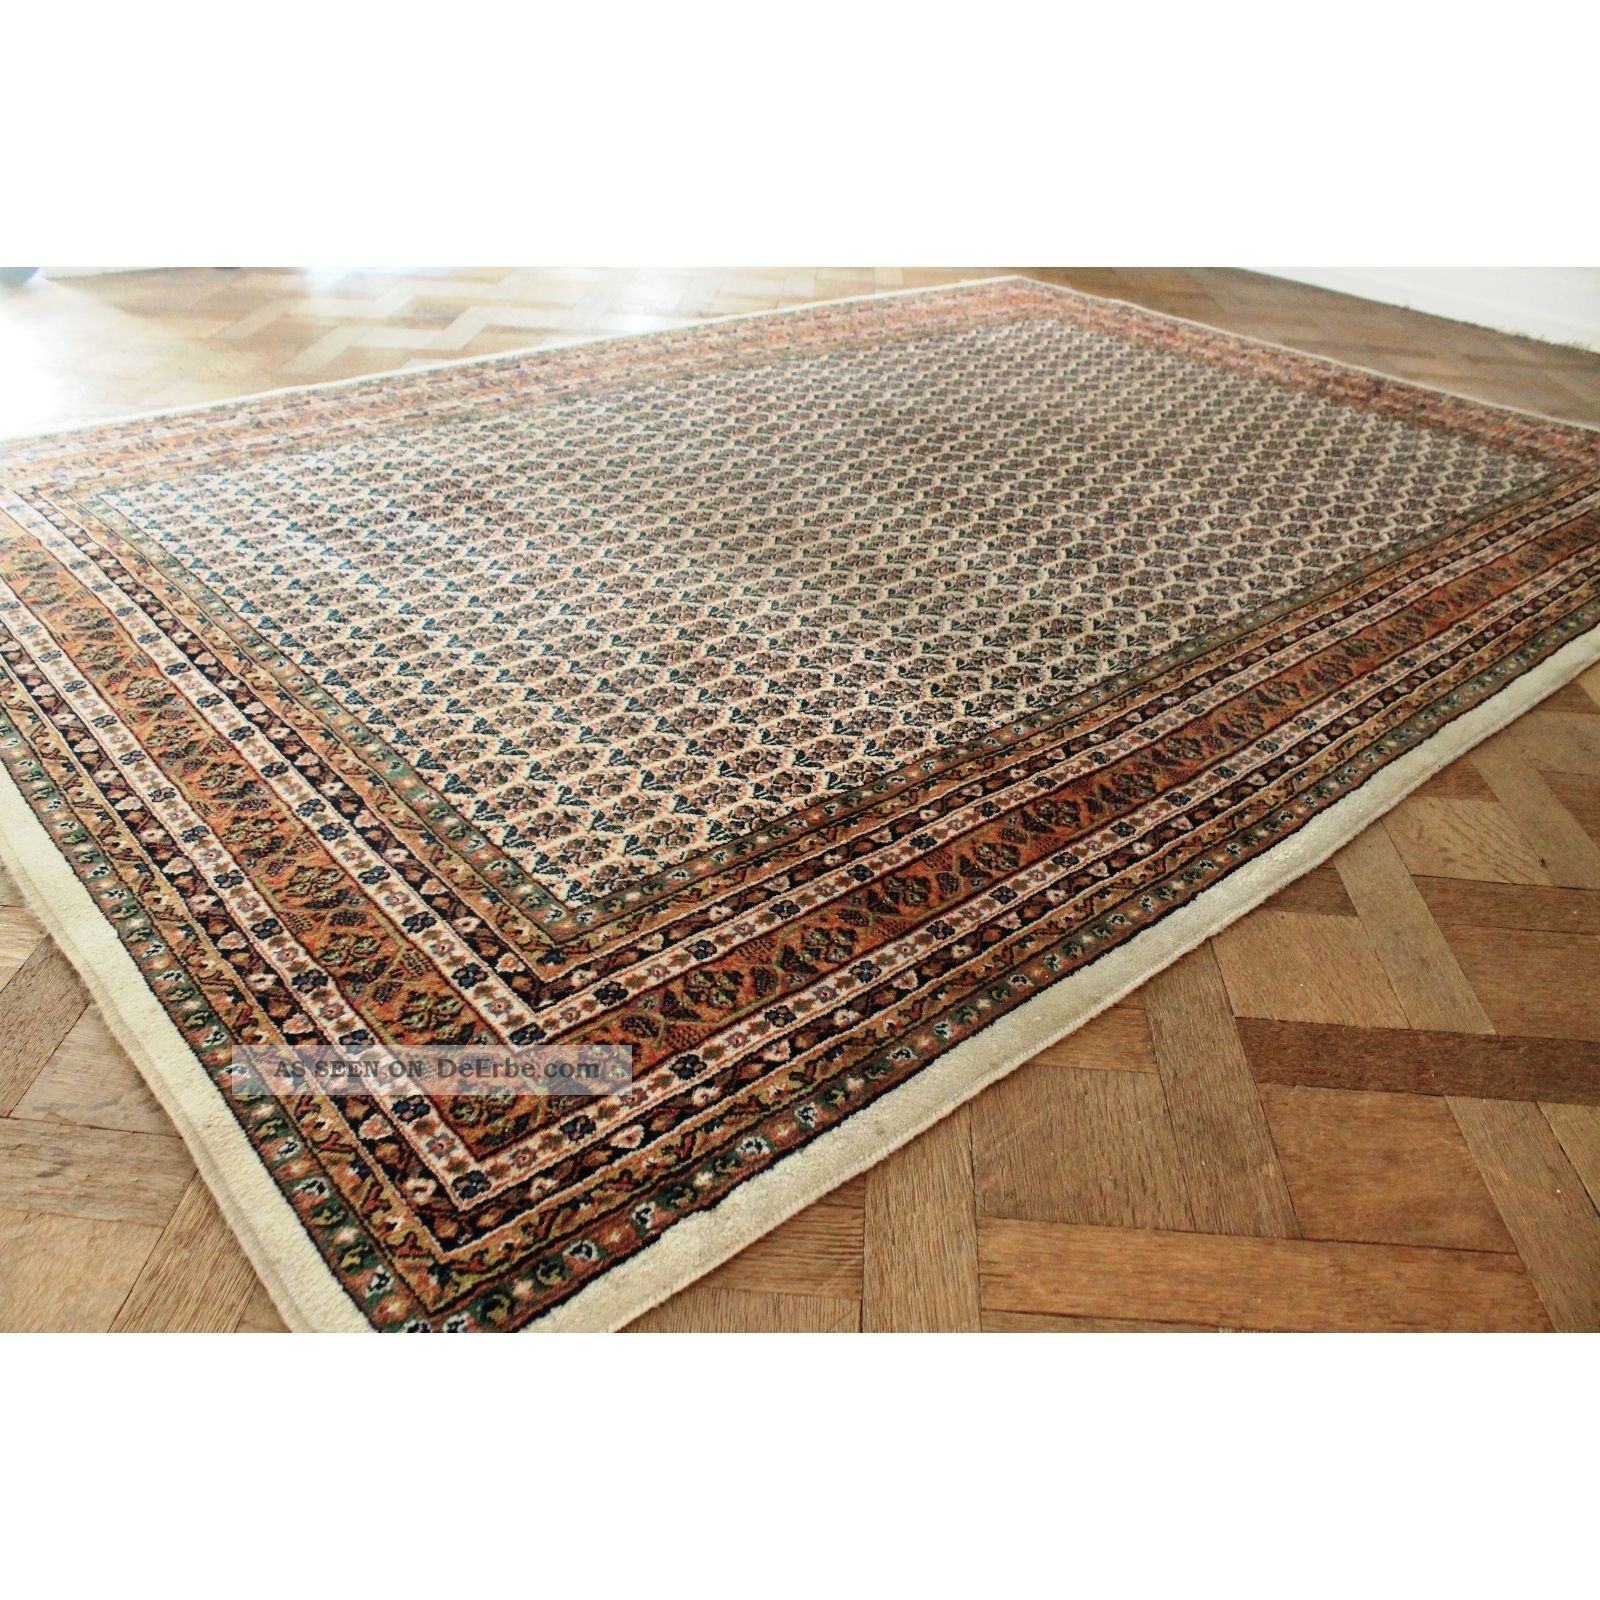 Edel Handgeknüpfter Orient Palast Teppich Blumen Kum Carpet Rug Tapis 300x205cm Teppiche & Flachgewebe Bild